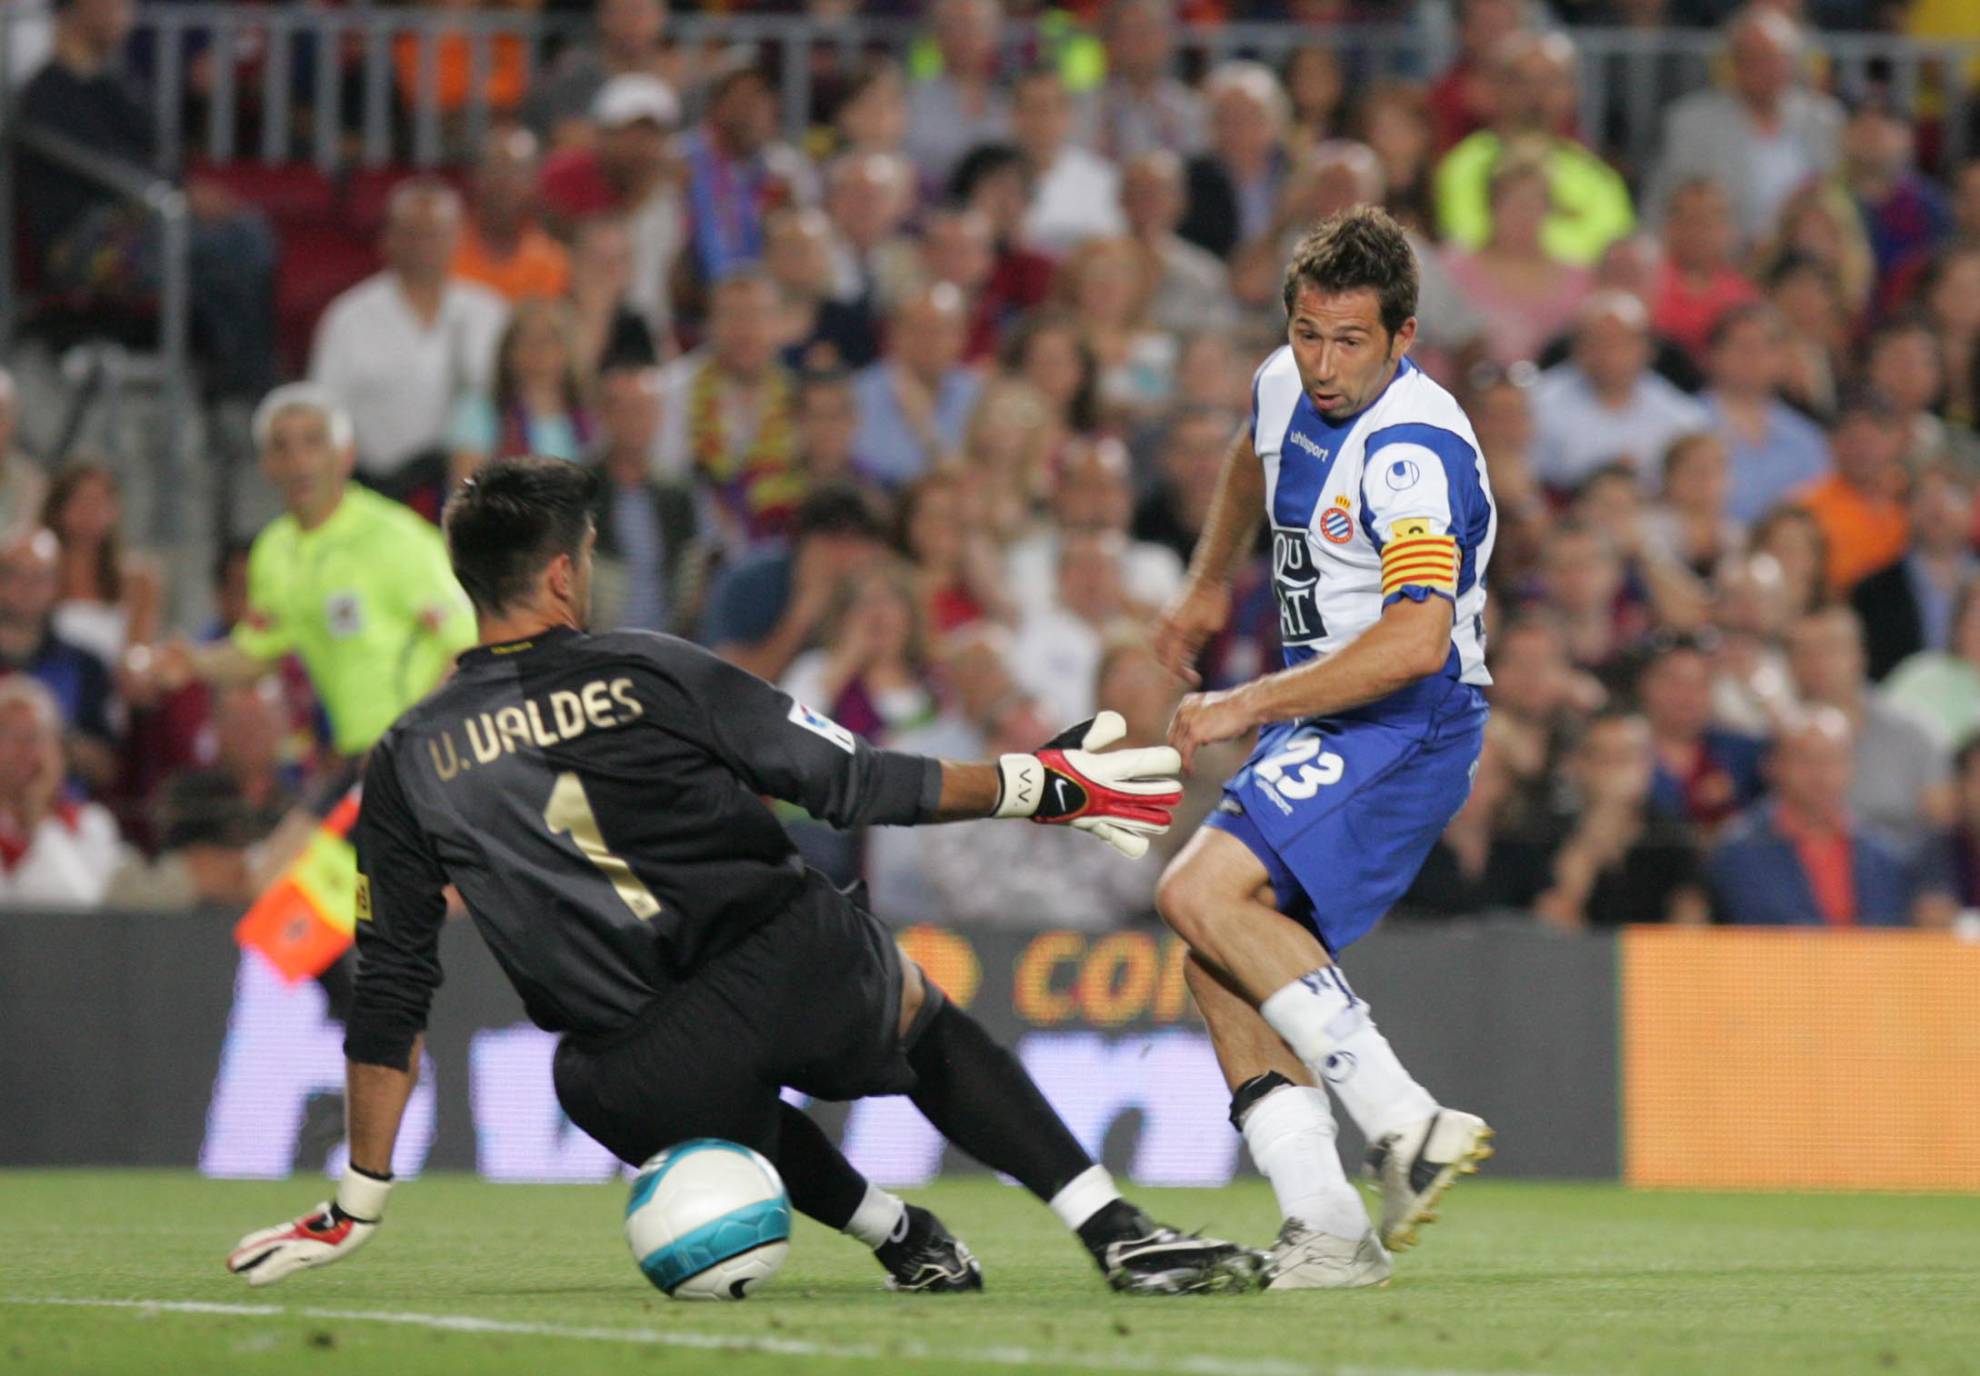 El 2-2 de Tamudo a Víctor Valdés en el Barcelona-Espanyol con el que el título iba a parar a manos del Real Madrid.